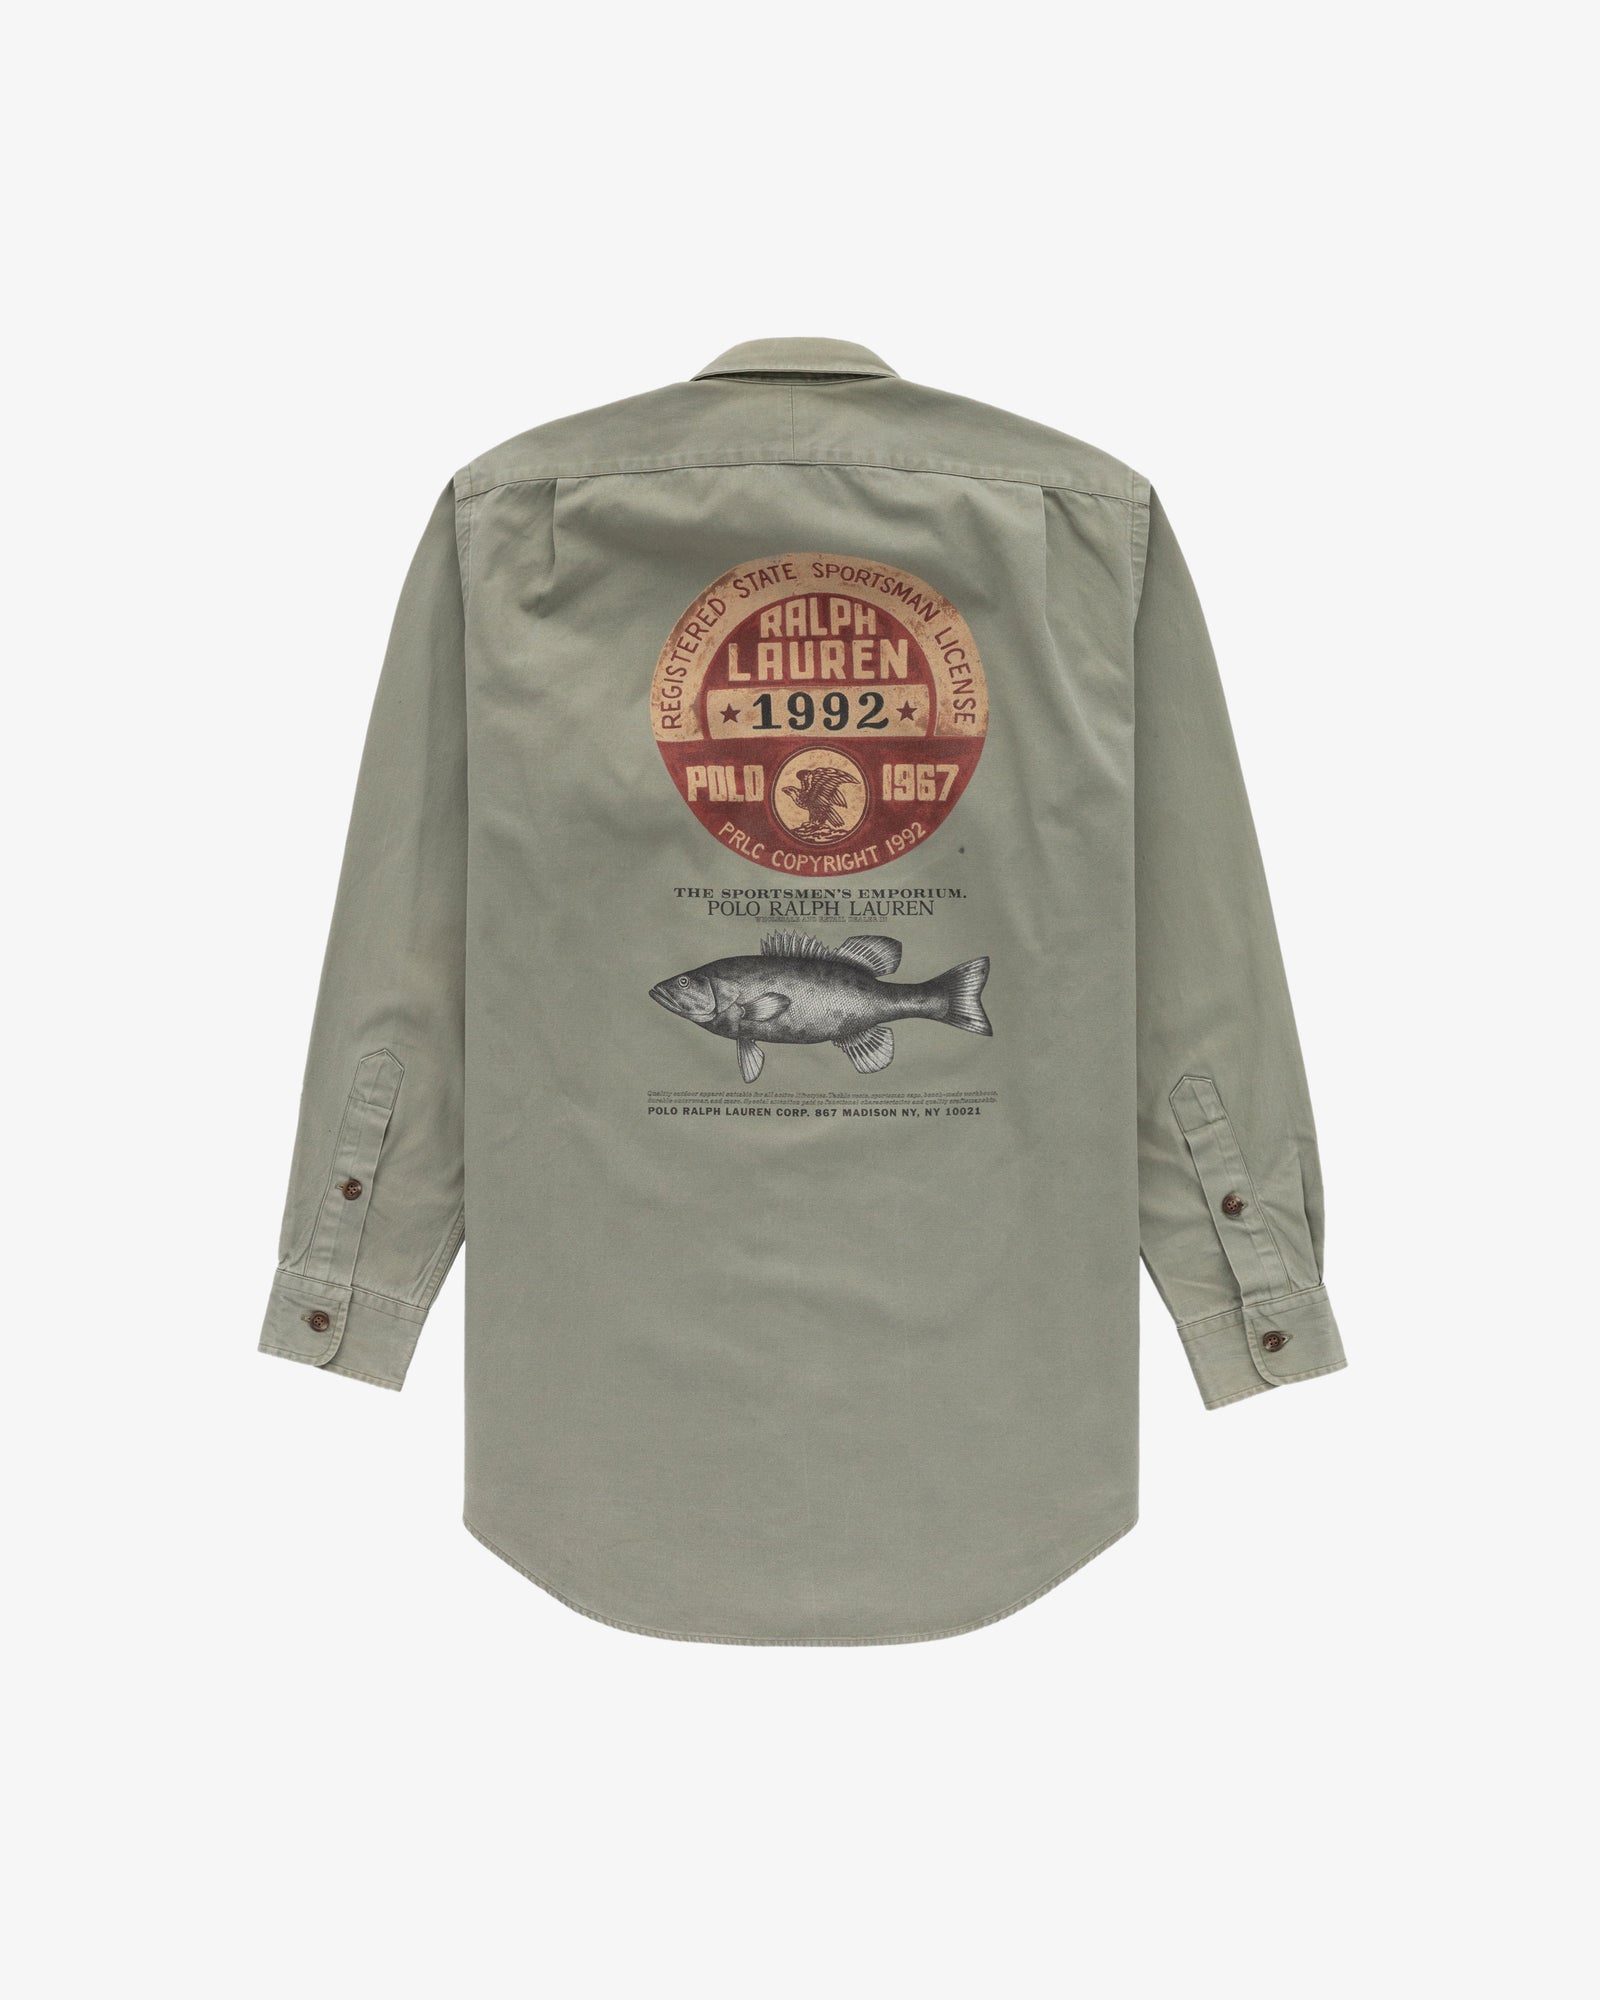 Vintage Polo Sportsman Fishing Shirt